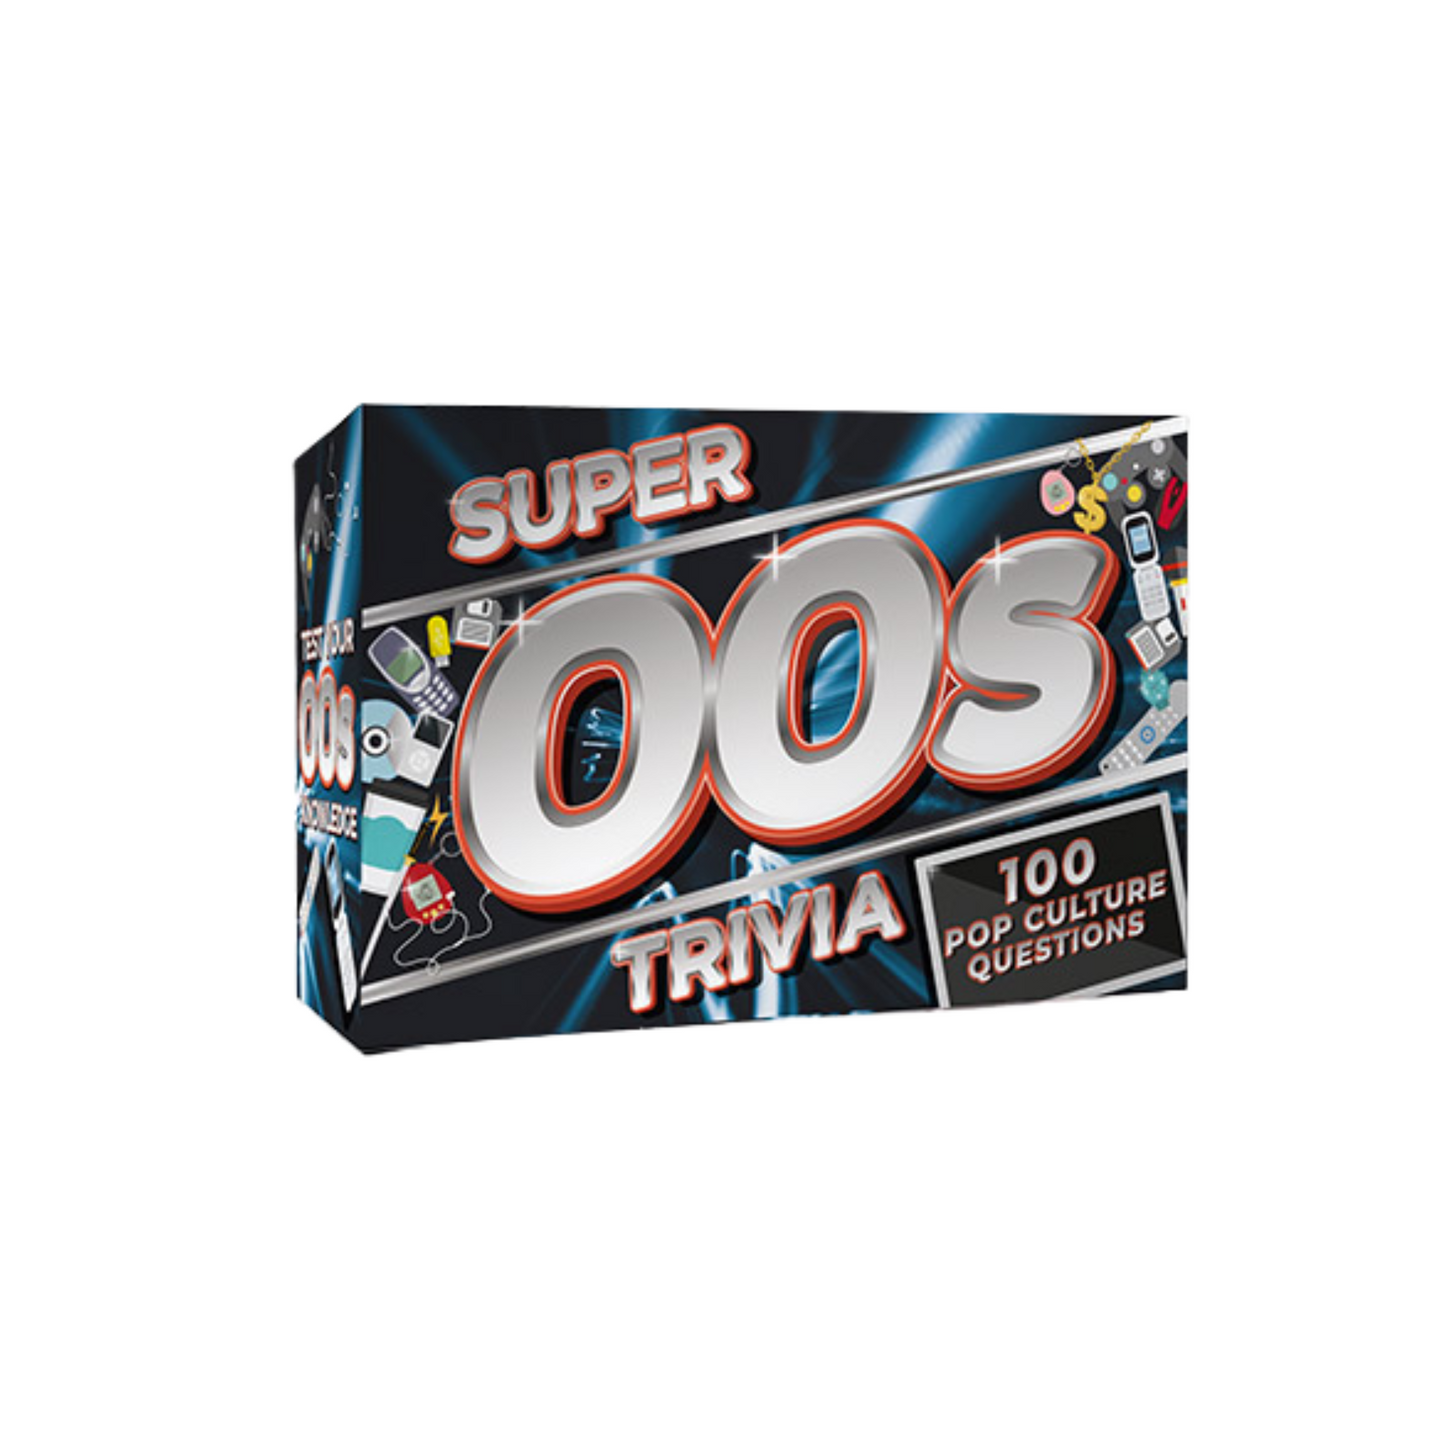 Super 00s Trivia Deck